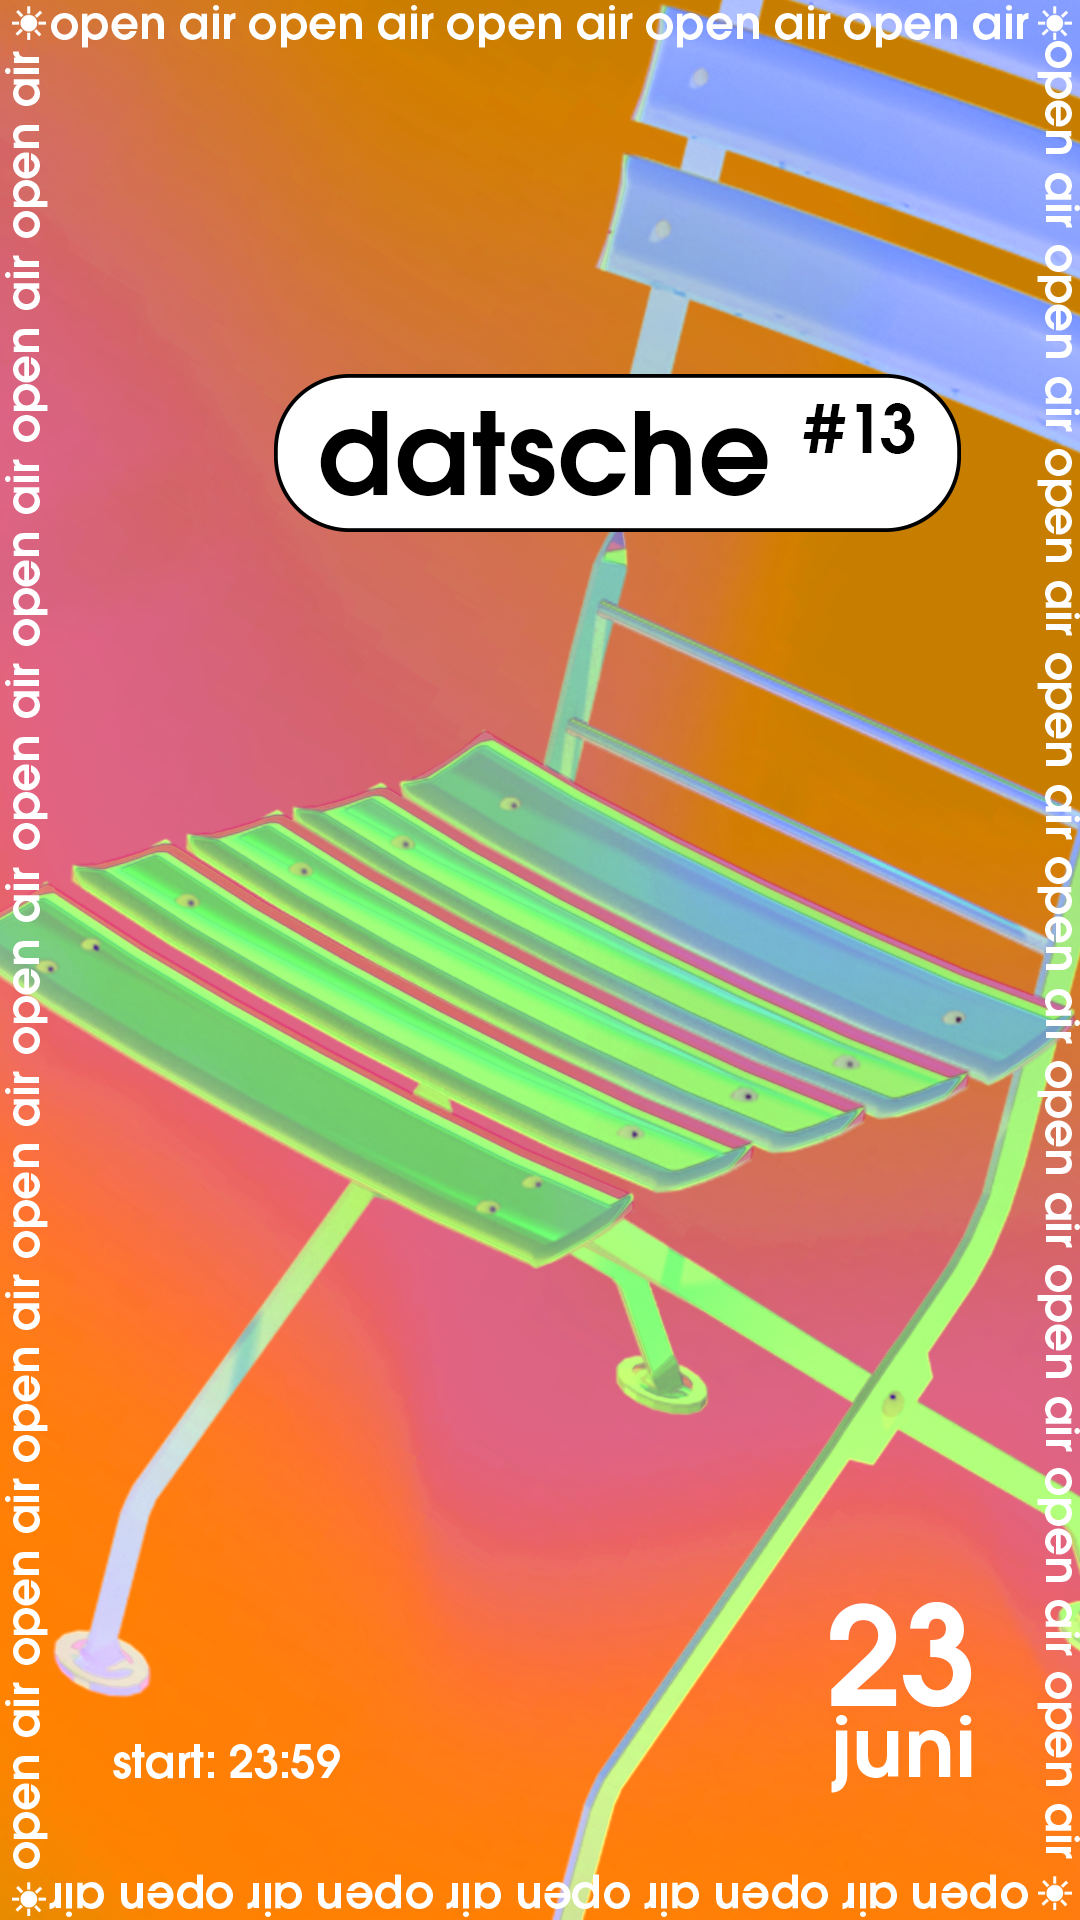 datsche #13 - フライヤー表